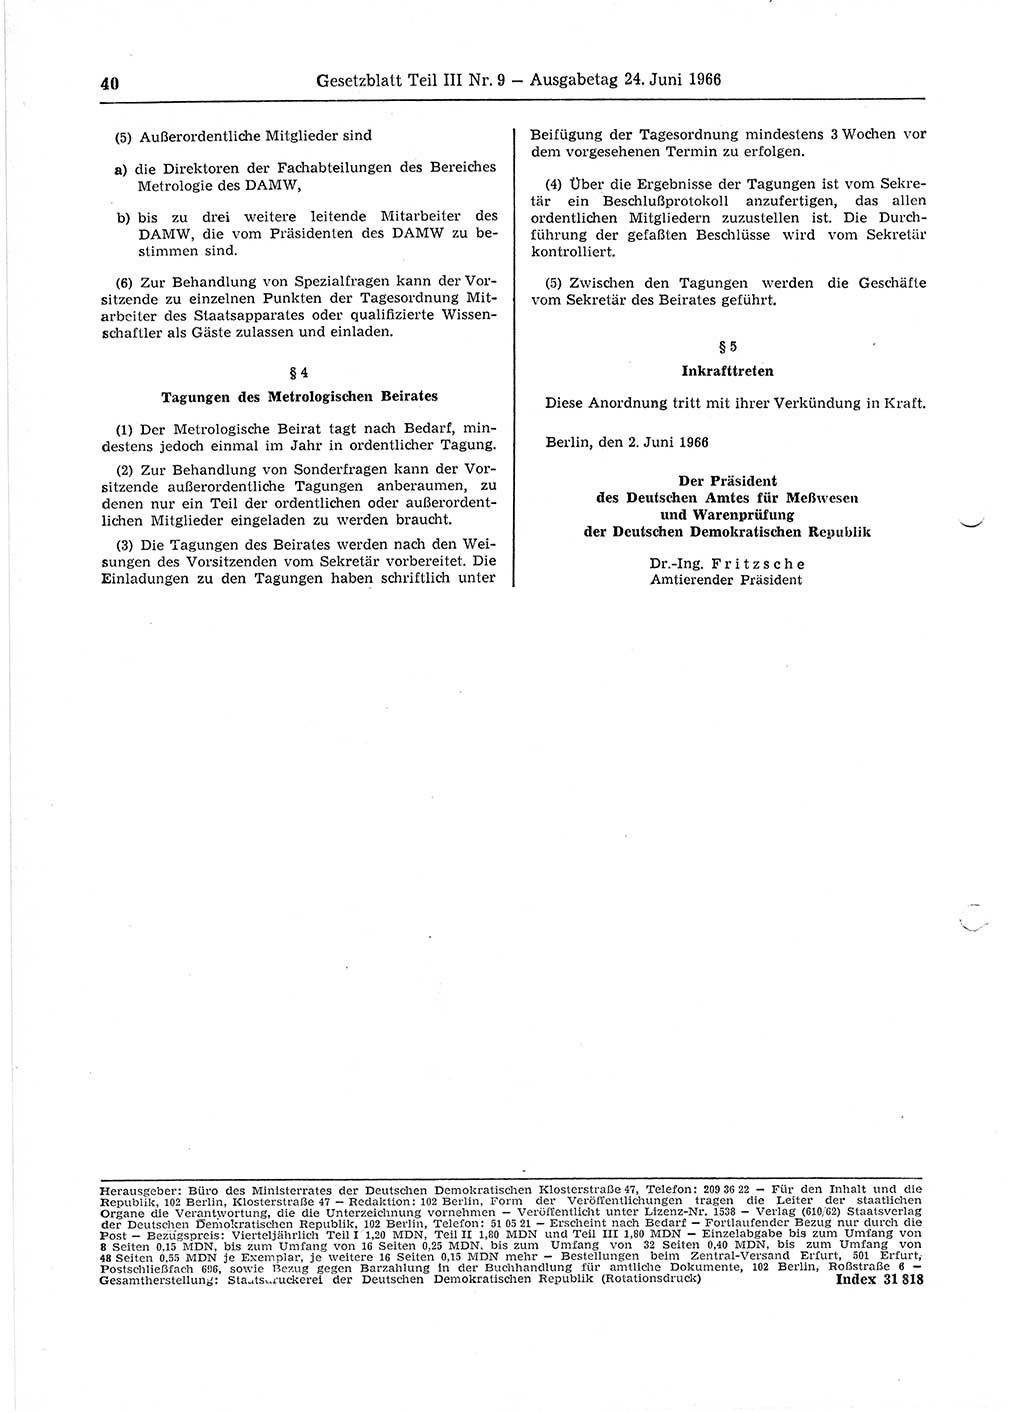 Gesetzblatt (GBl.) der Deutschen Demokratischen Republik (DDR) Teil ⅠⅠⅠ 1966, Seite 40 (GBl. DDR ⅠⅠⅠ 1966, S. 40)